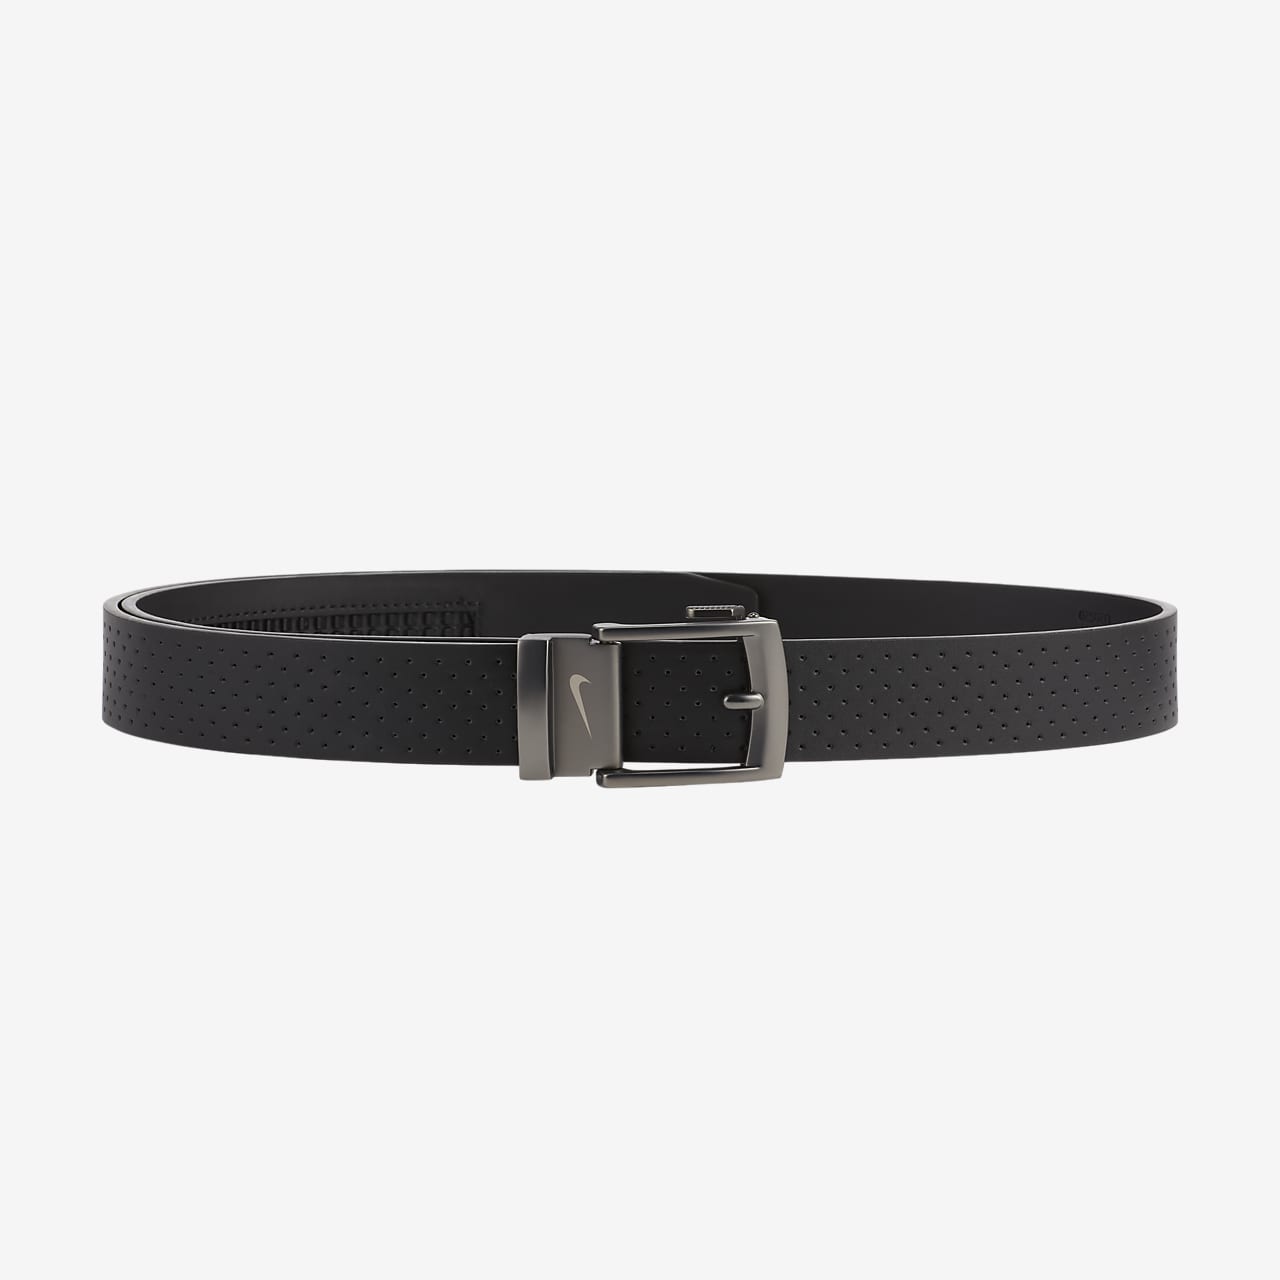 Men's Black Leather Belt - Made in France